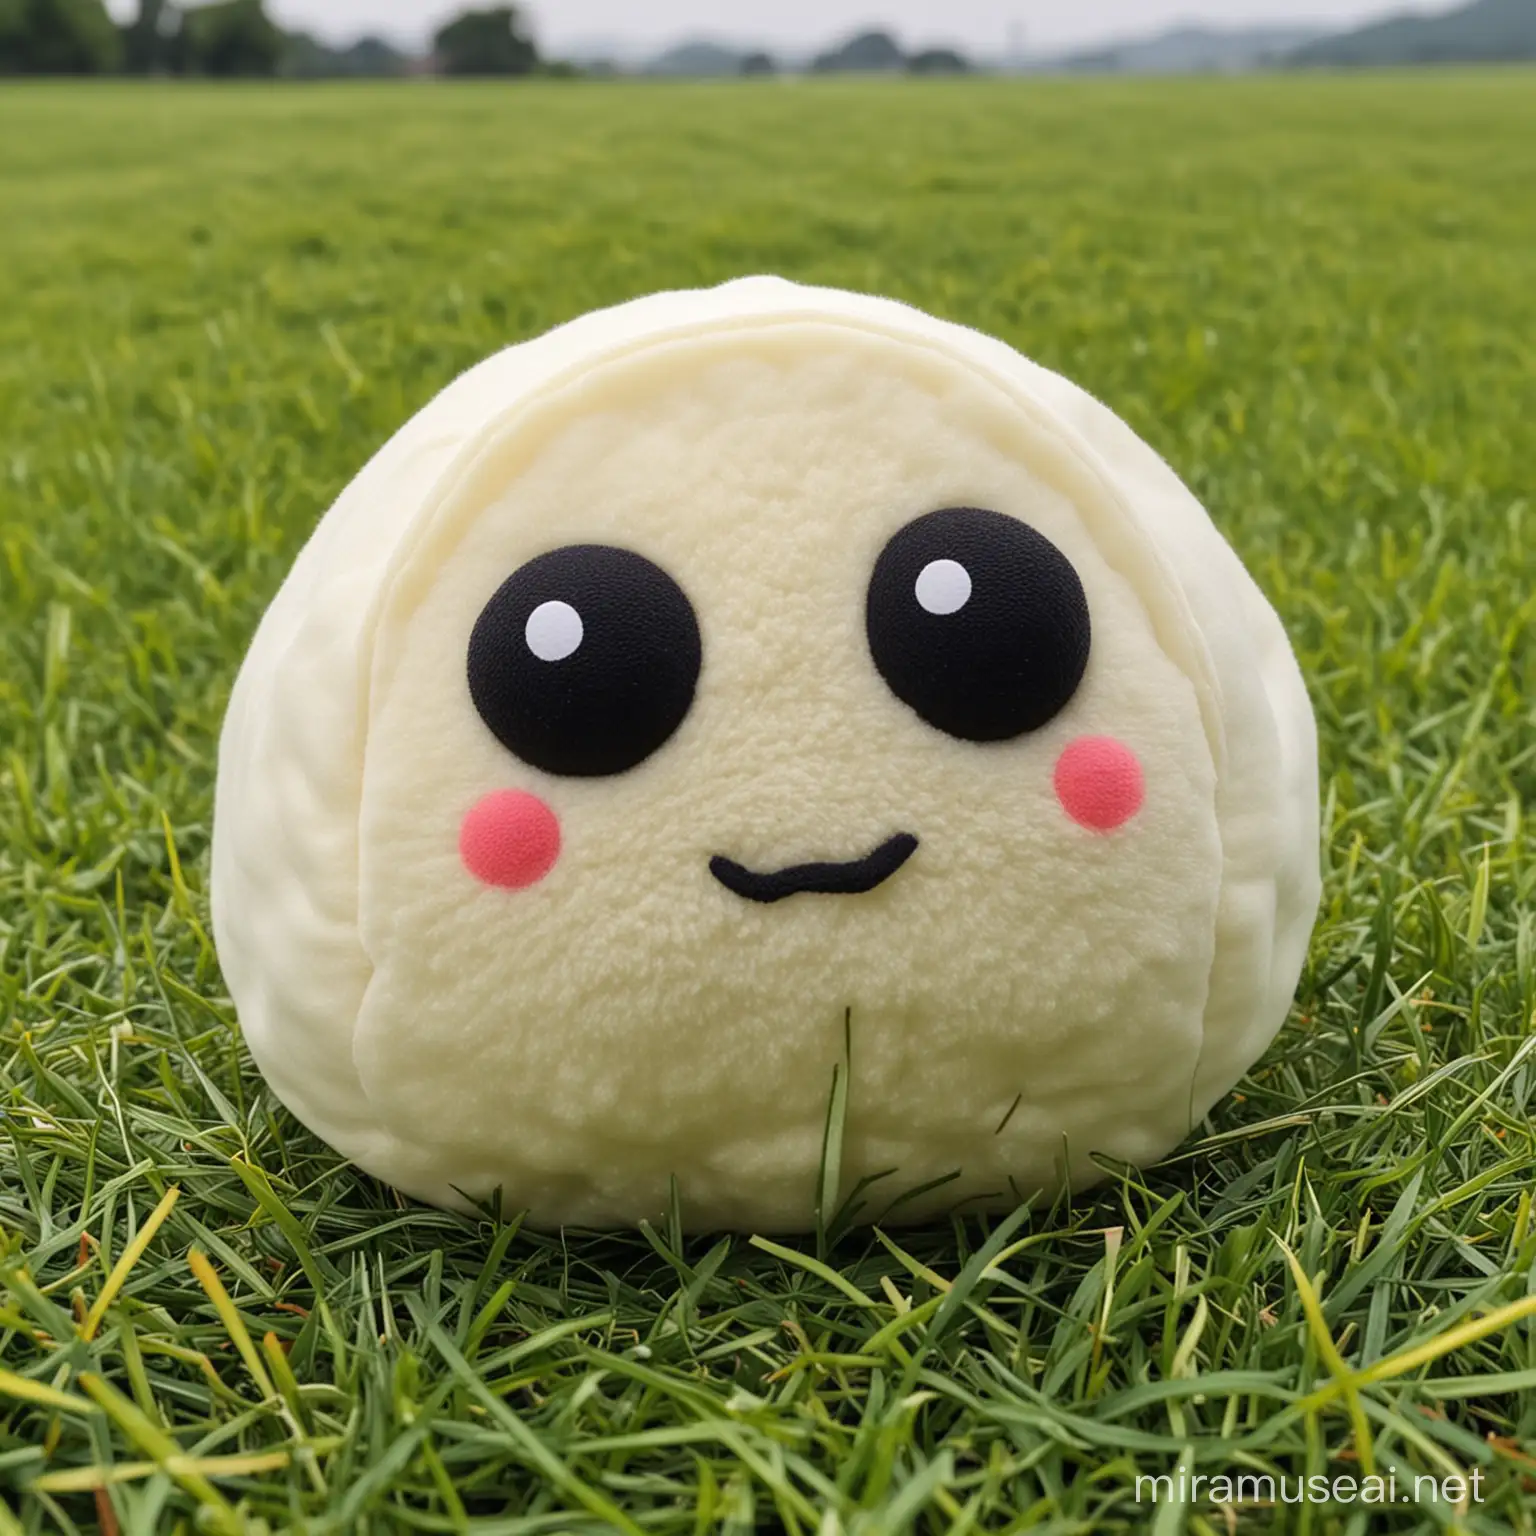 Adorable Dumpling Stuffed Toy on Grassy Field